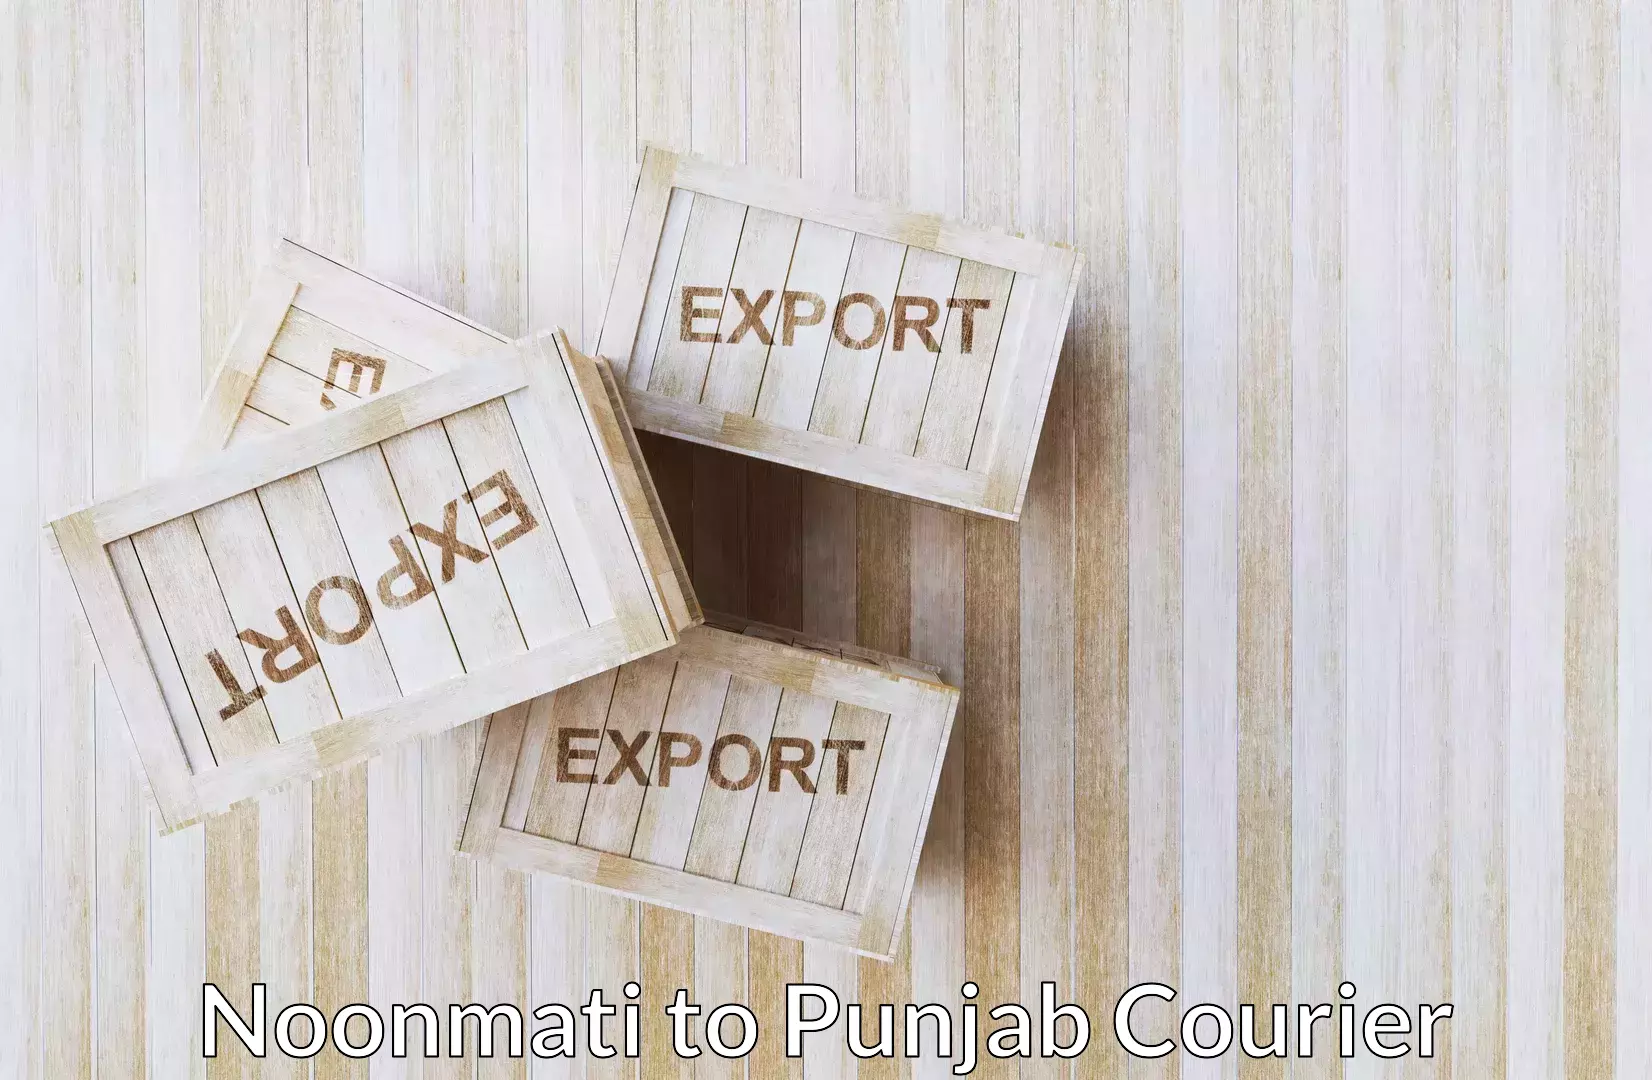 Baggage shipping experts Noonmati to Punjab